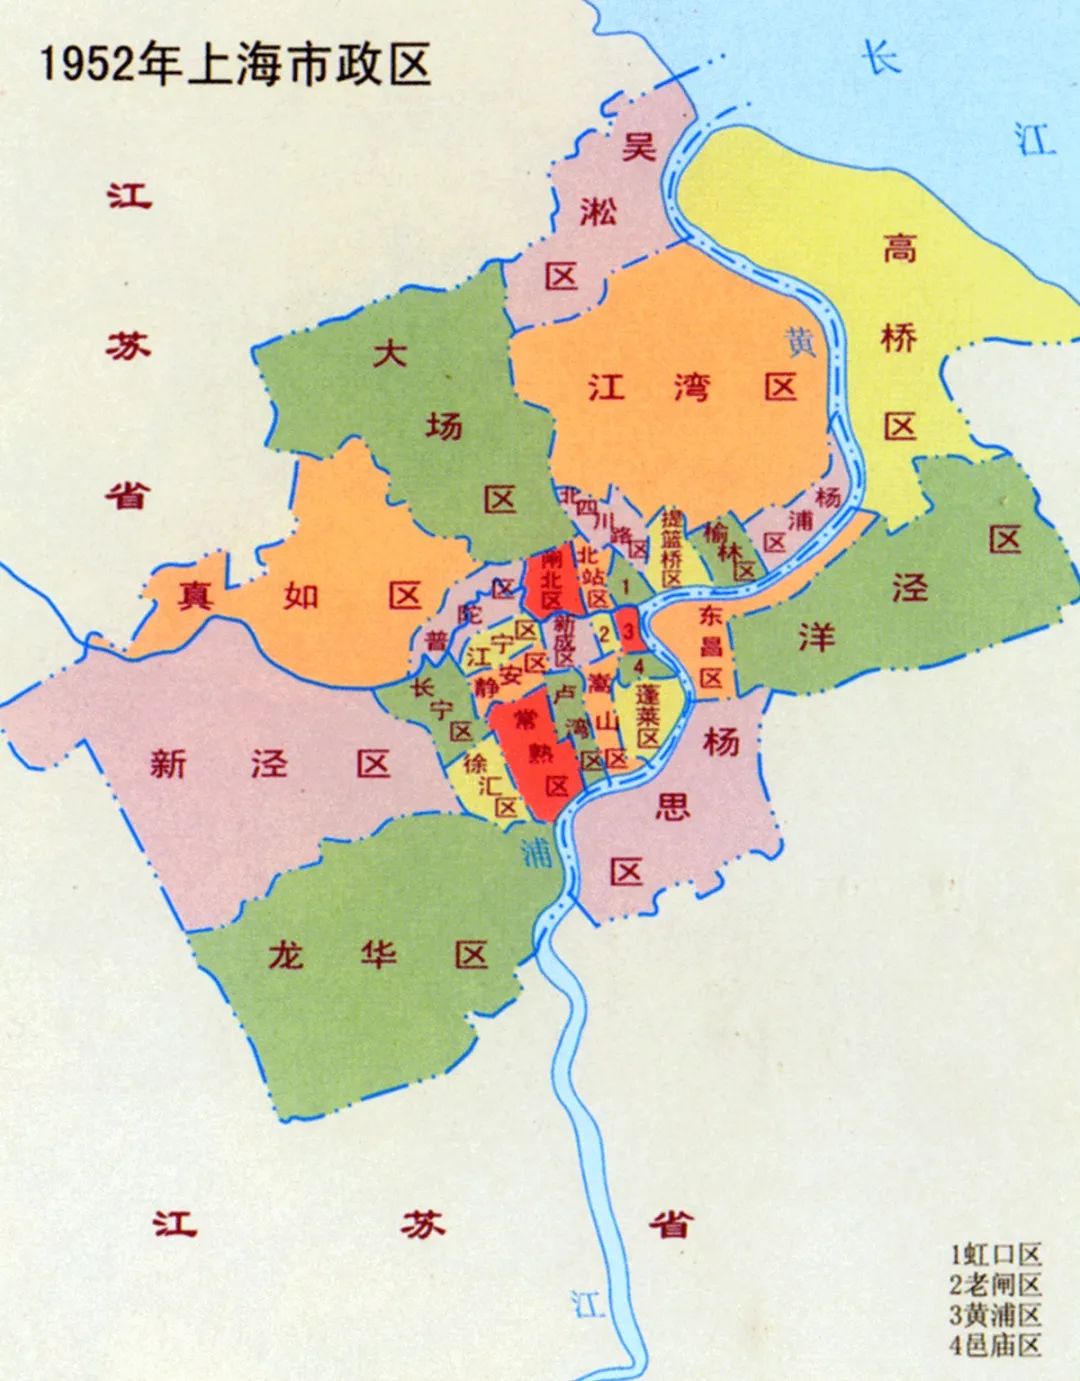 1952年的上海市政图 (来源:《上海历史地图集》周振鹤主编)